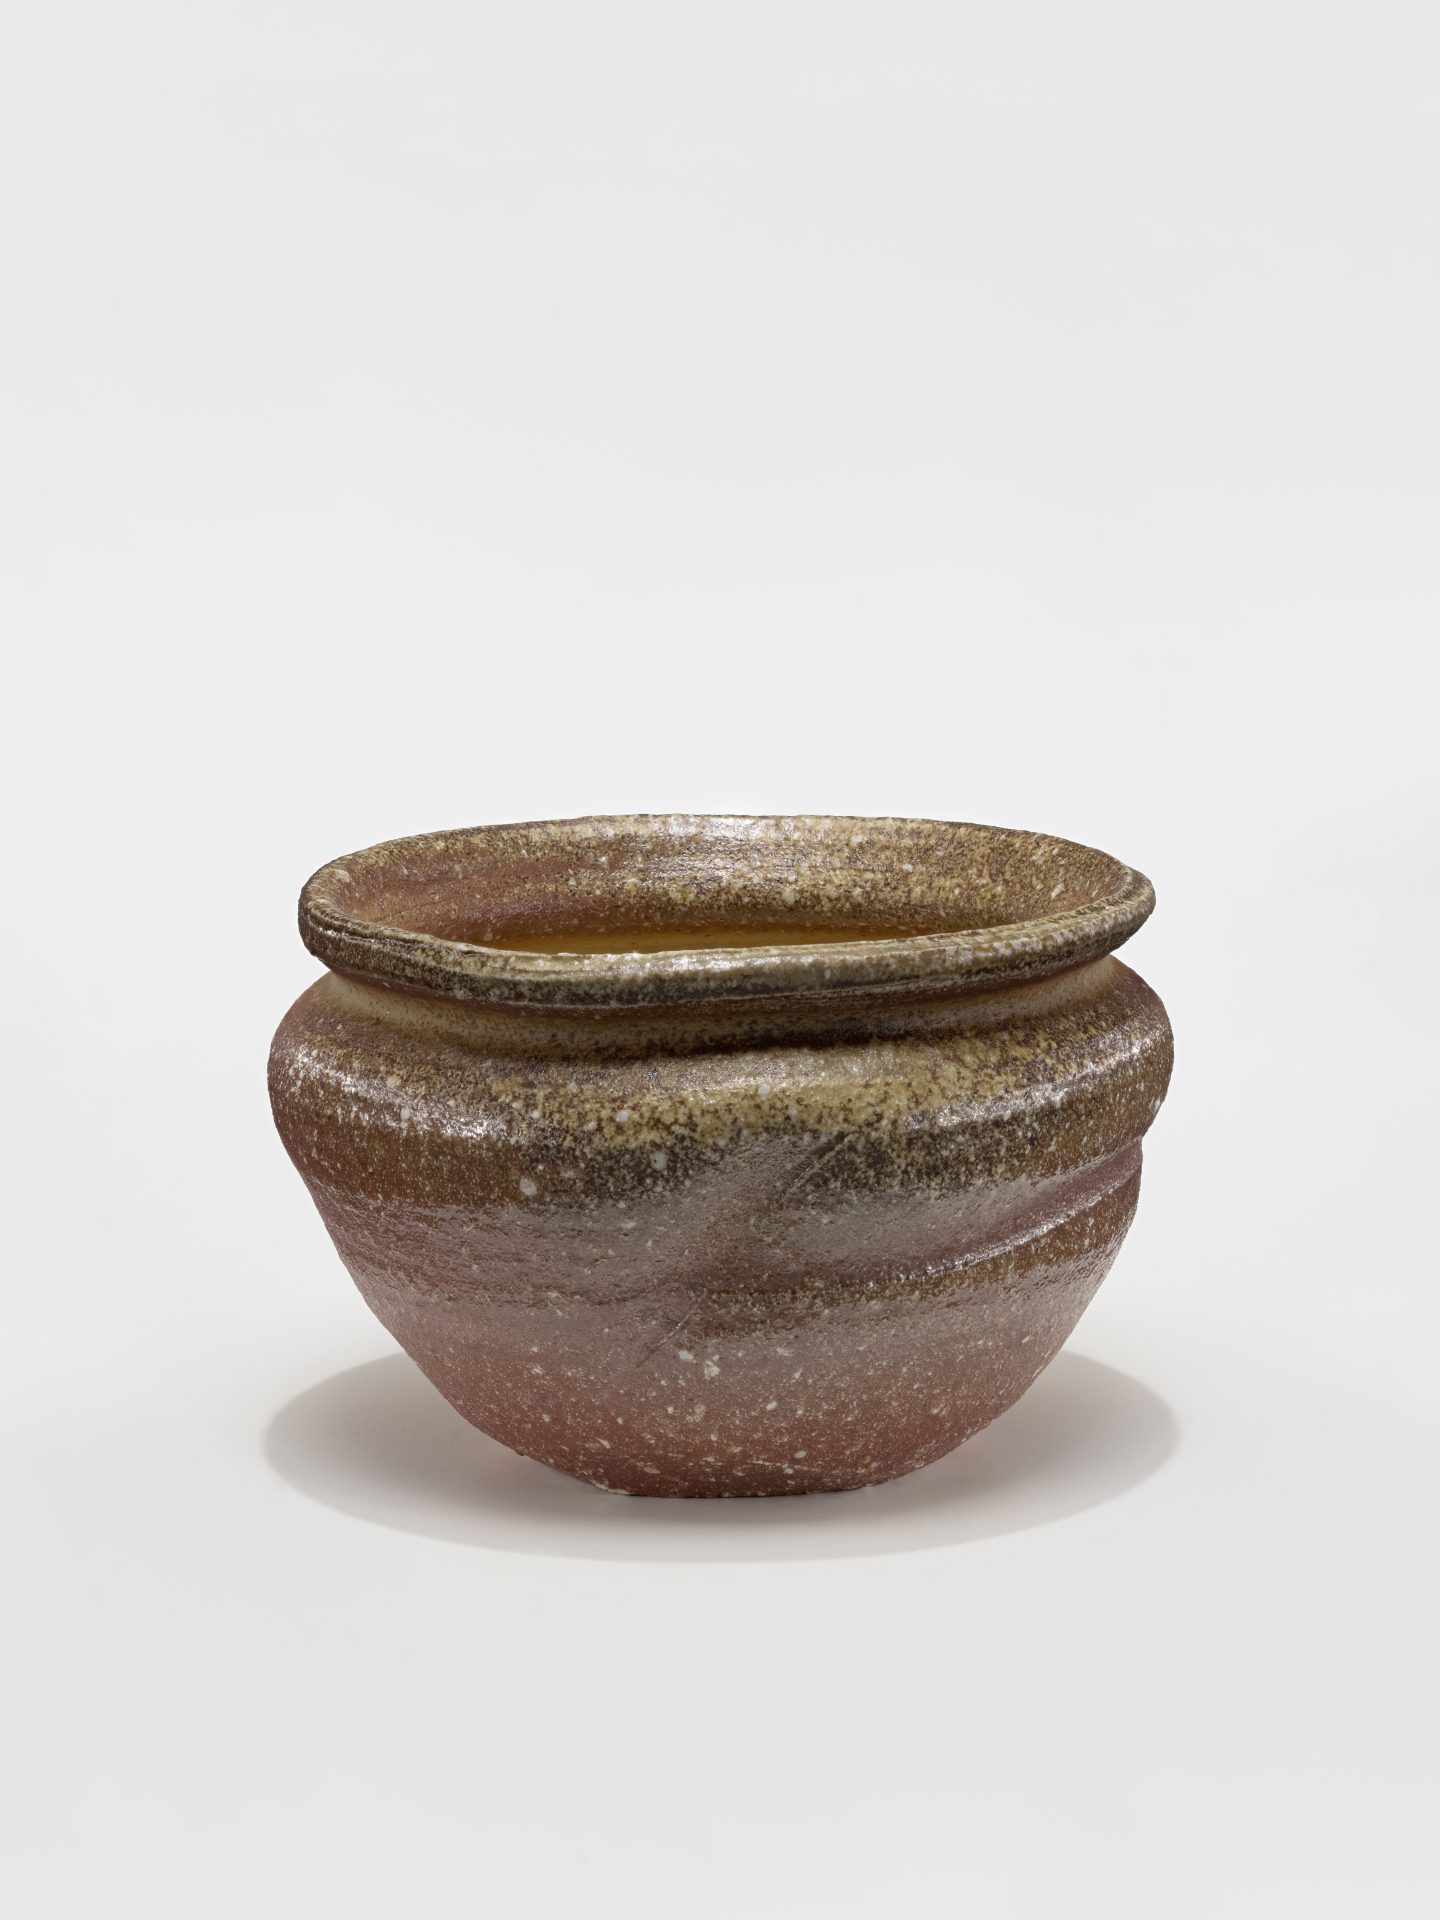 Aufnahme von einem Gefäß aus Keramik vom japanischen Künstler Ueda Naokata V